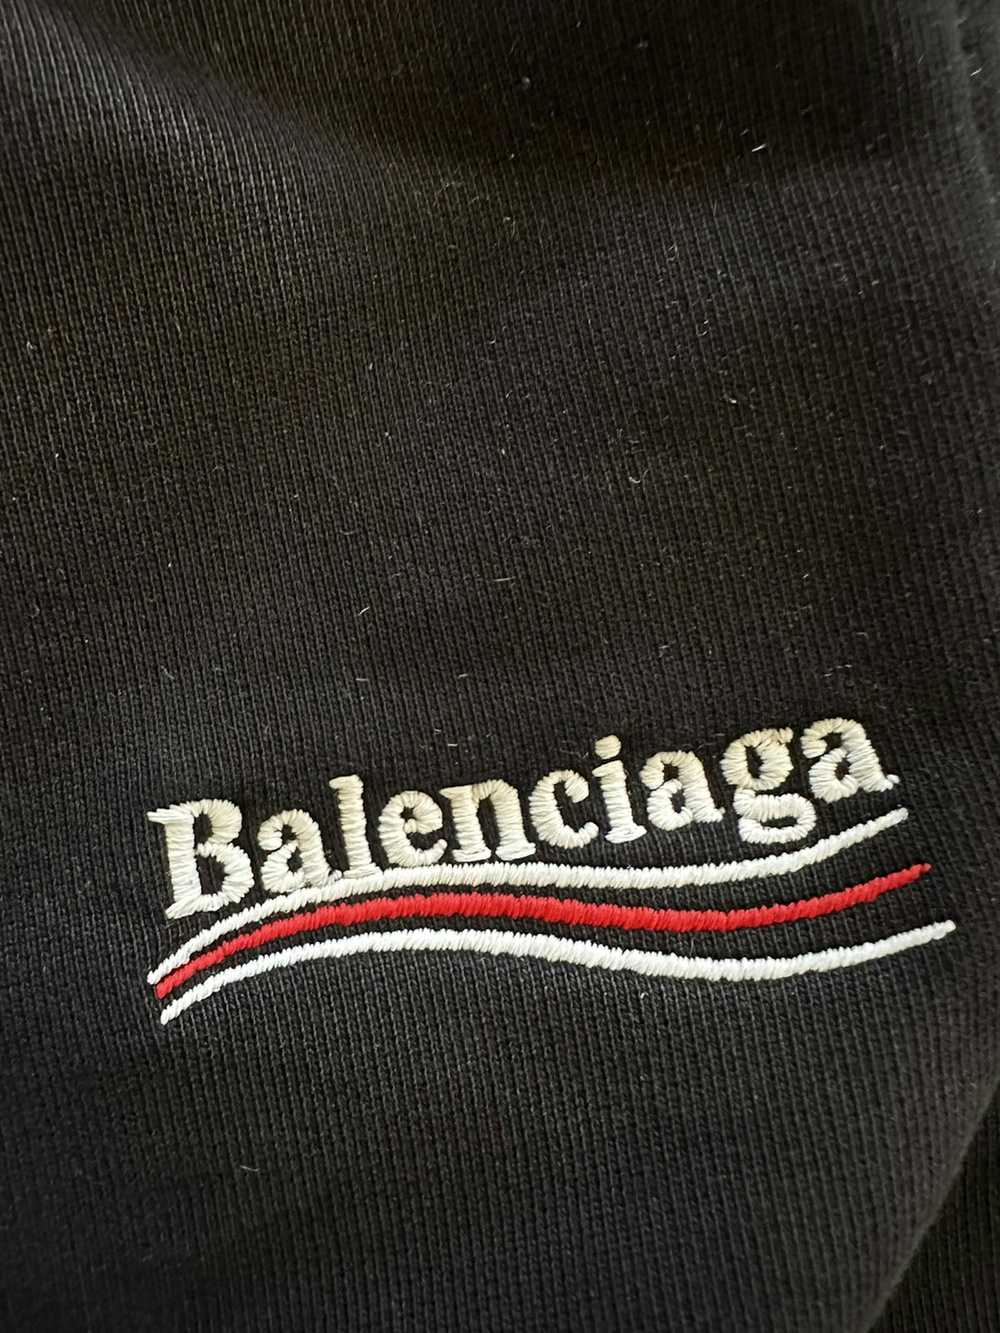 Balenciaga balenciaga political campaign shorts - image 2